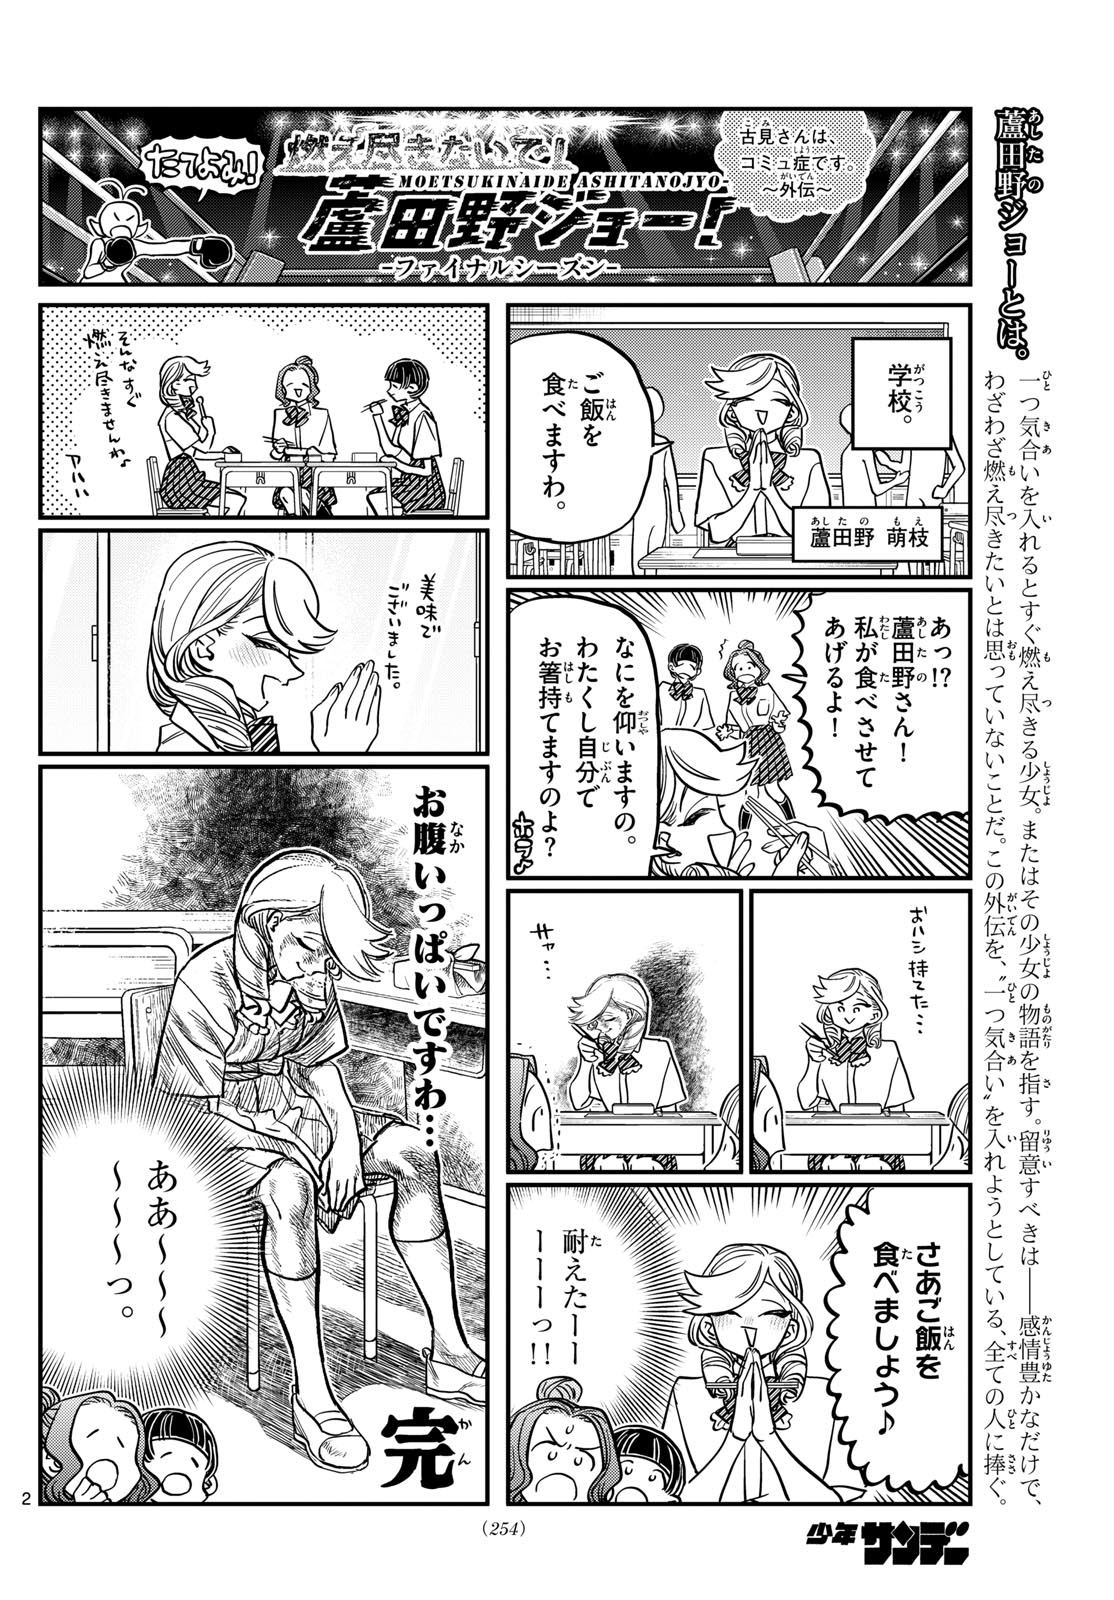 Komi-san wa Komyushou Desu - Chapter 440 - Page 2